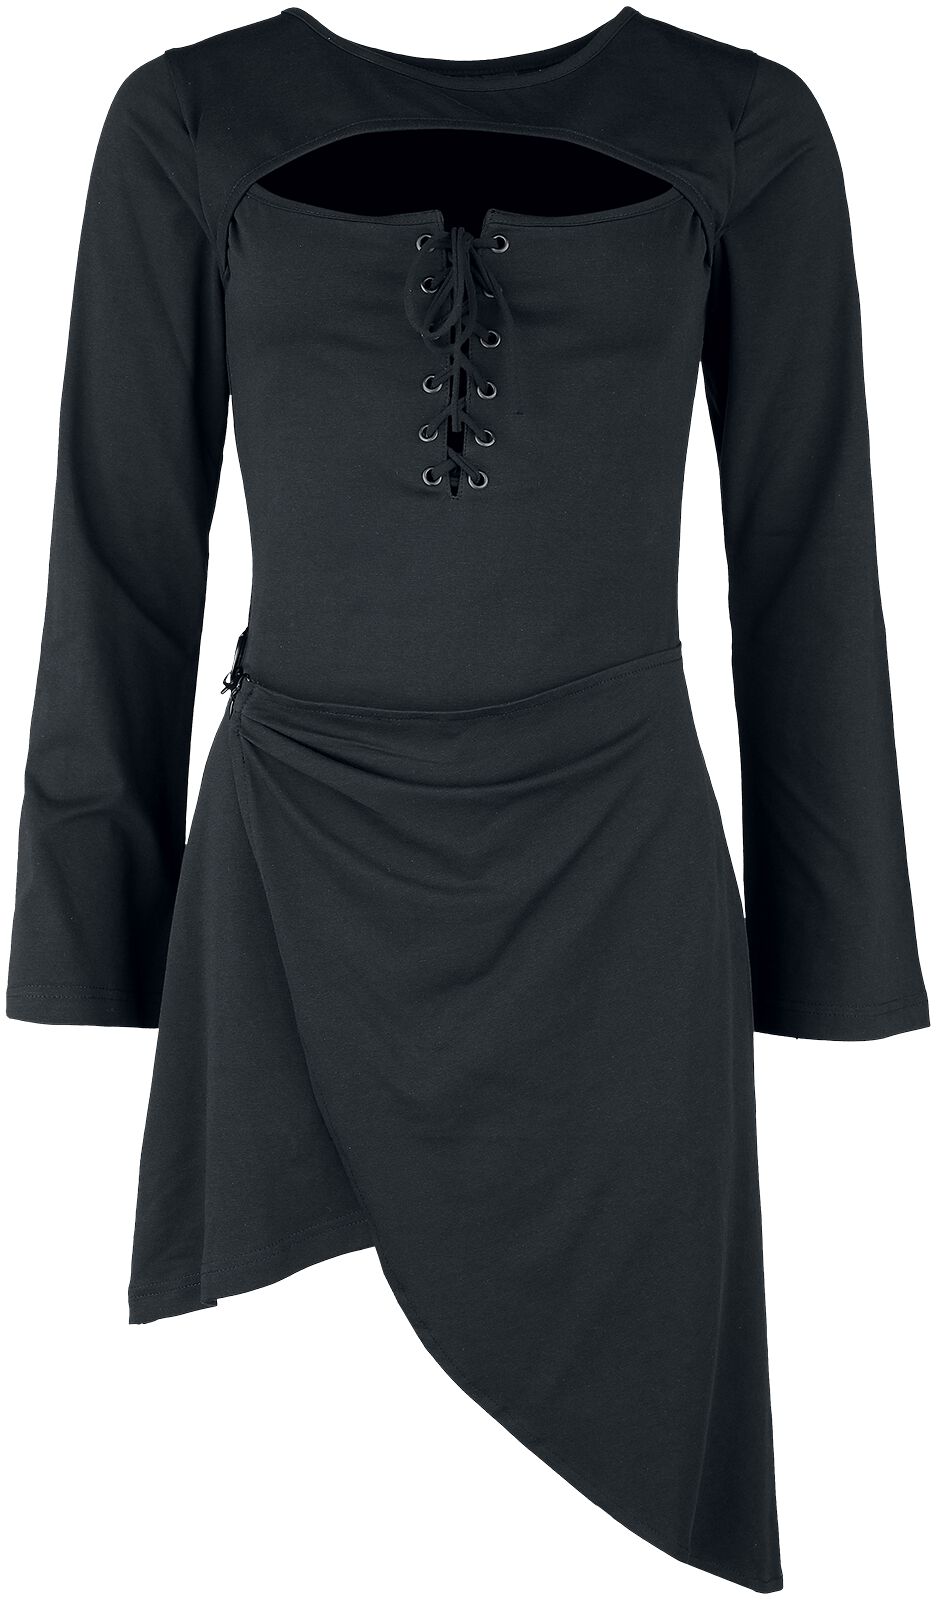 Chemical Black - Gothic Langarmshirt - Endora Top - XS bis 3XL - für Damen - Größe XL - schwarz